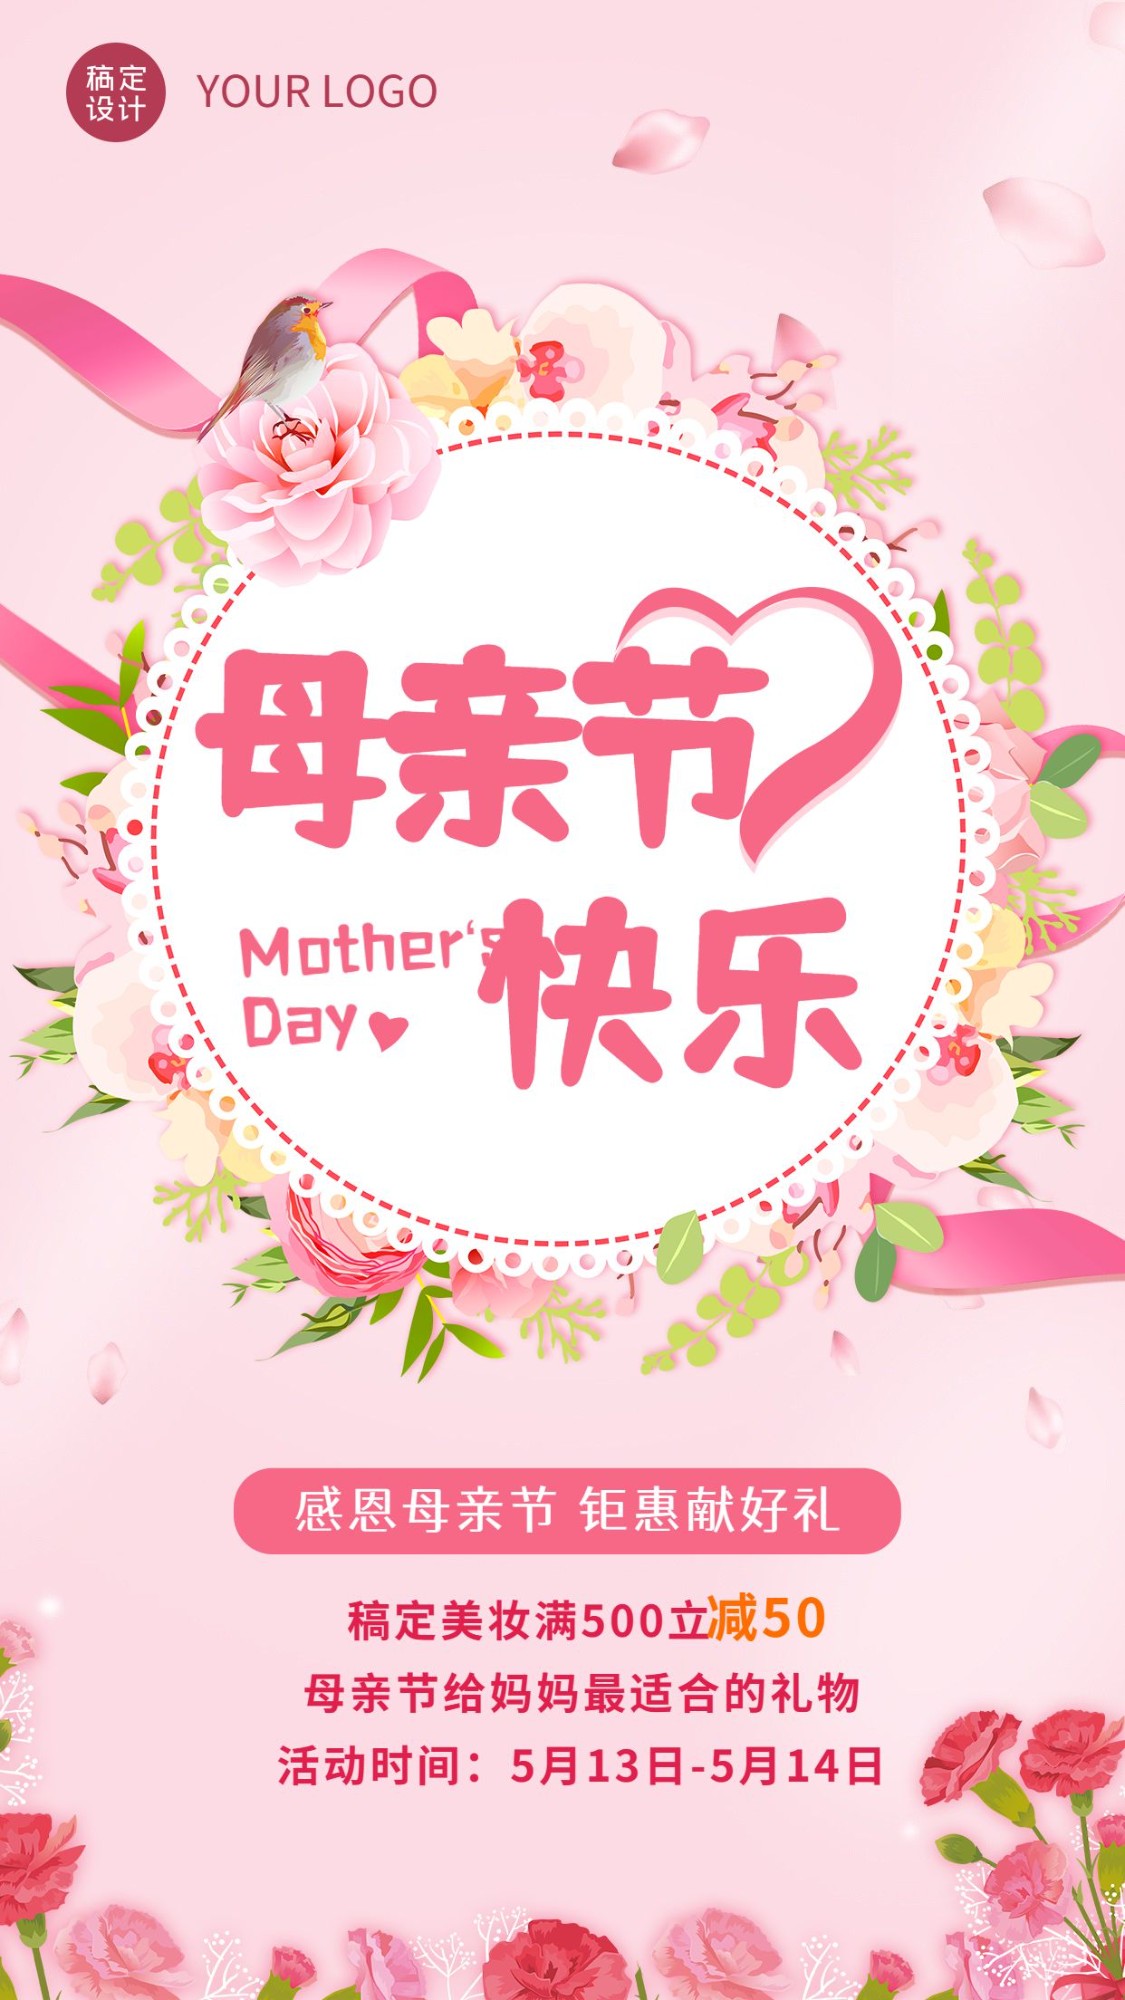 微商母亲节祝福美妆活动营销手机海报预览效果